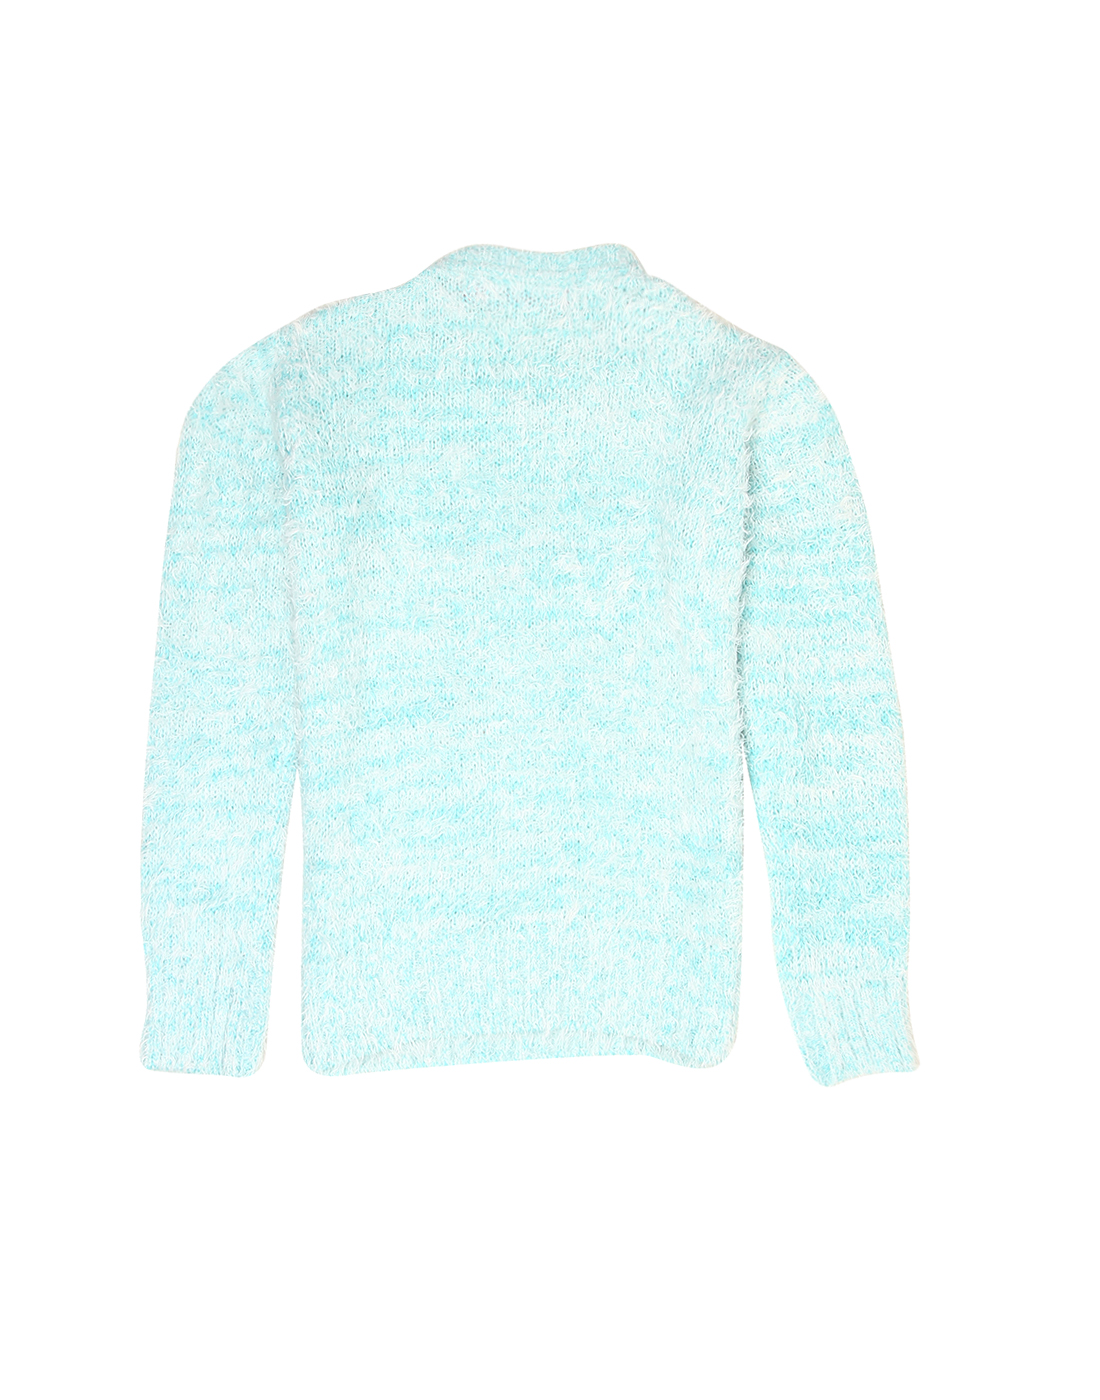 Wingsfield Girls Blue Sweater